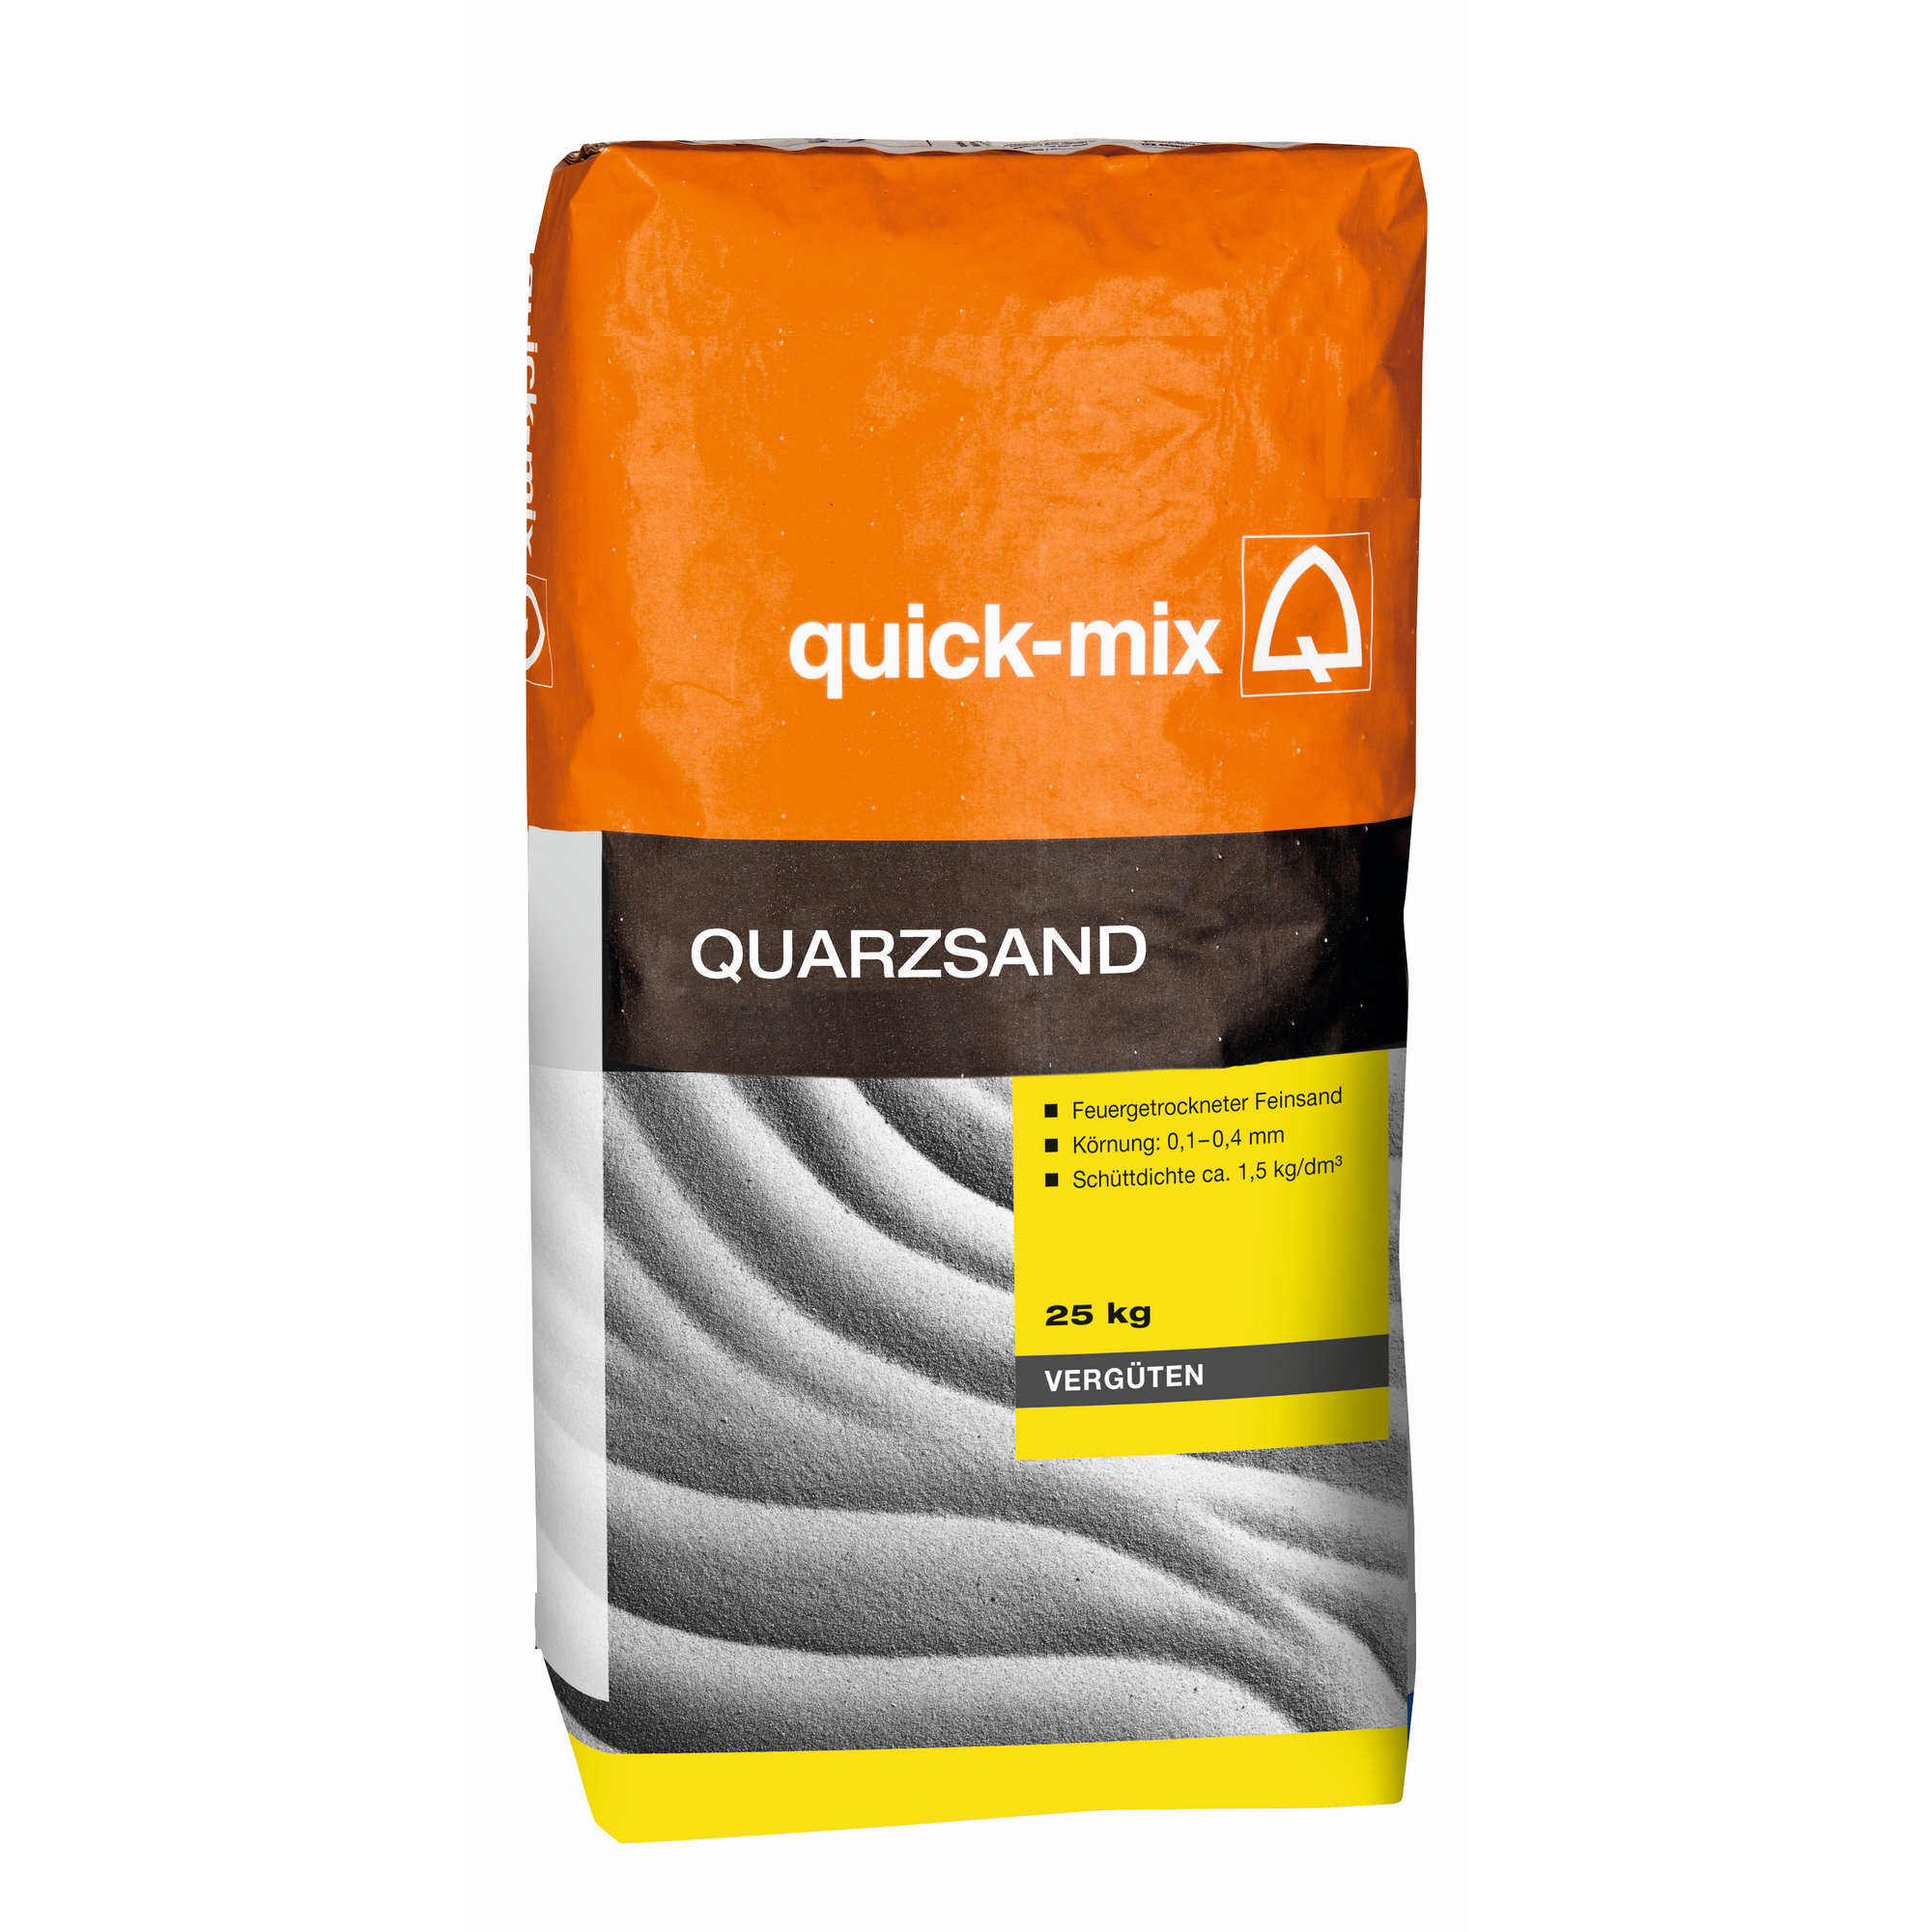 Quarzsand 25 kg + product picture